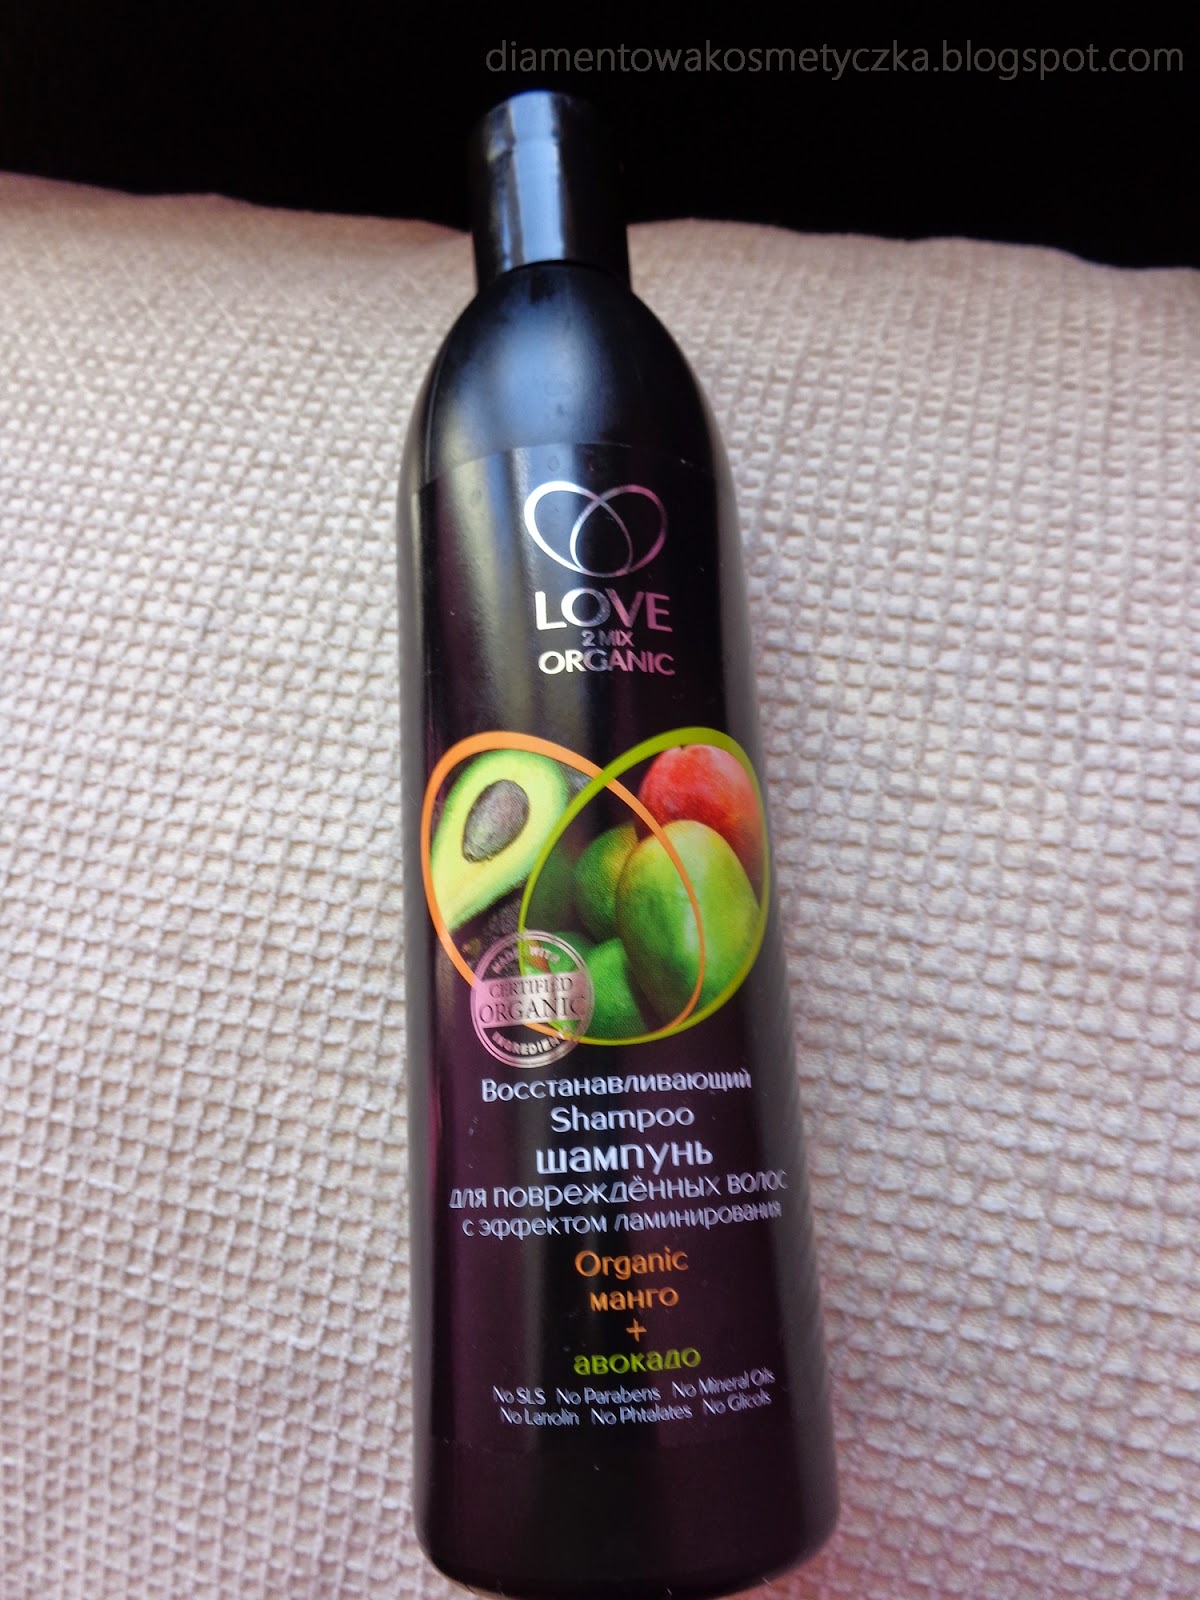 love2mix organic wizaż szampon na porost